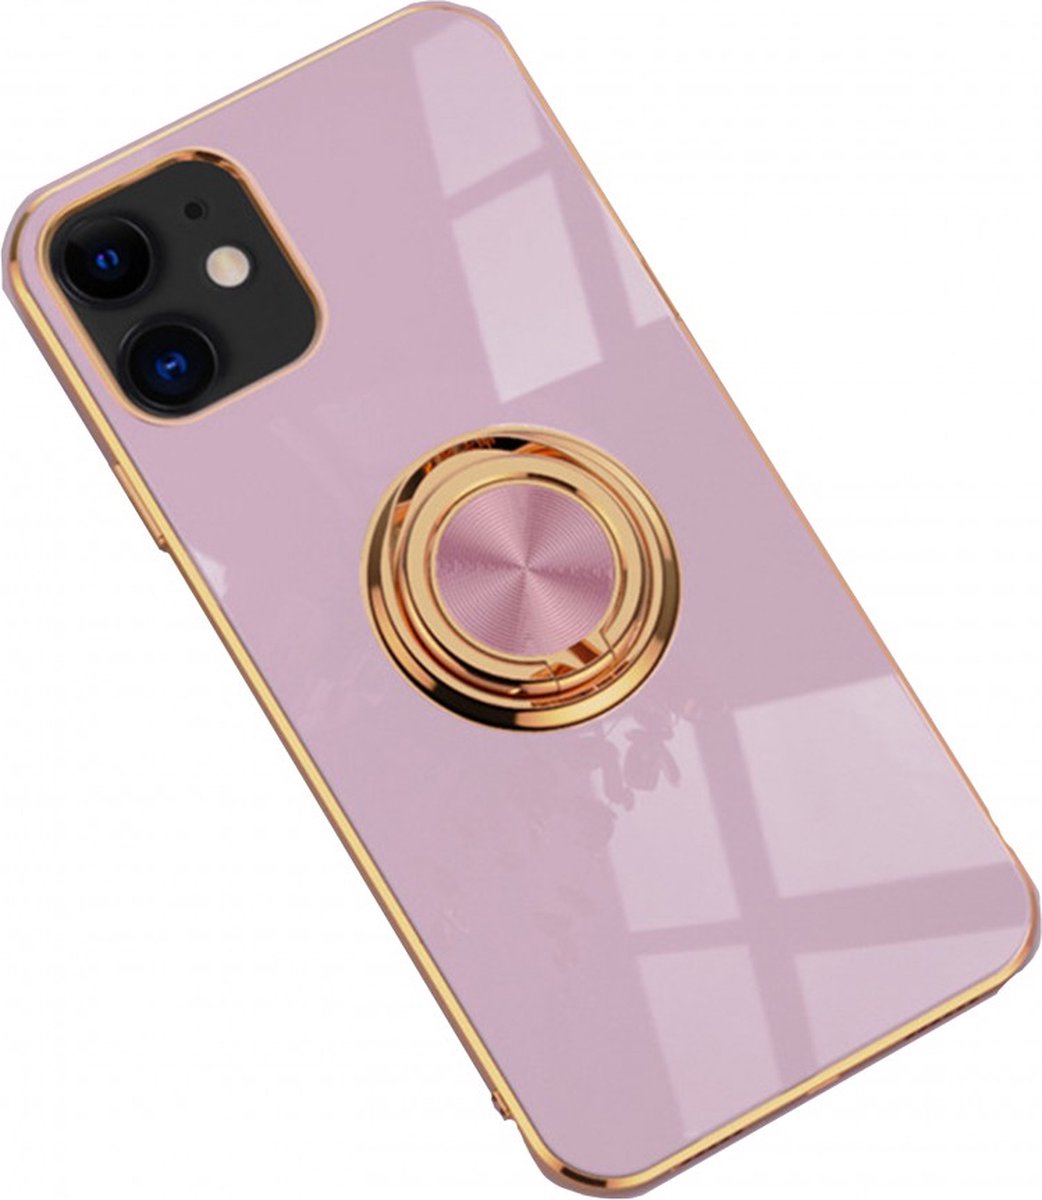 iPhone 12 Mini hoesje met ring - Kickstand - iPhone - Goud detail - Handig - Hoesje met ring - 5 verschillende kleuren - zalm roze - Grijs/blauw - Donker groen - Zwart - Paars